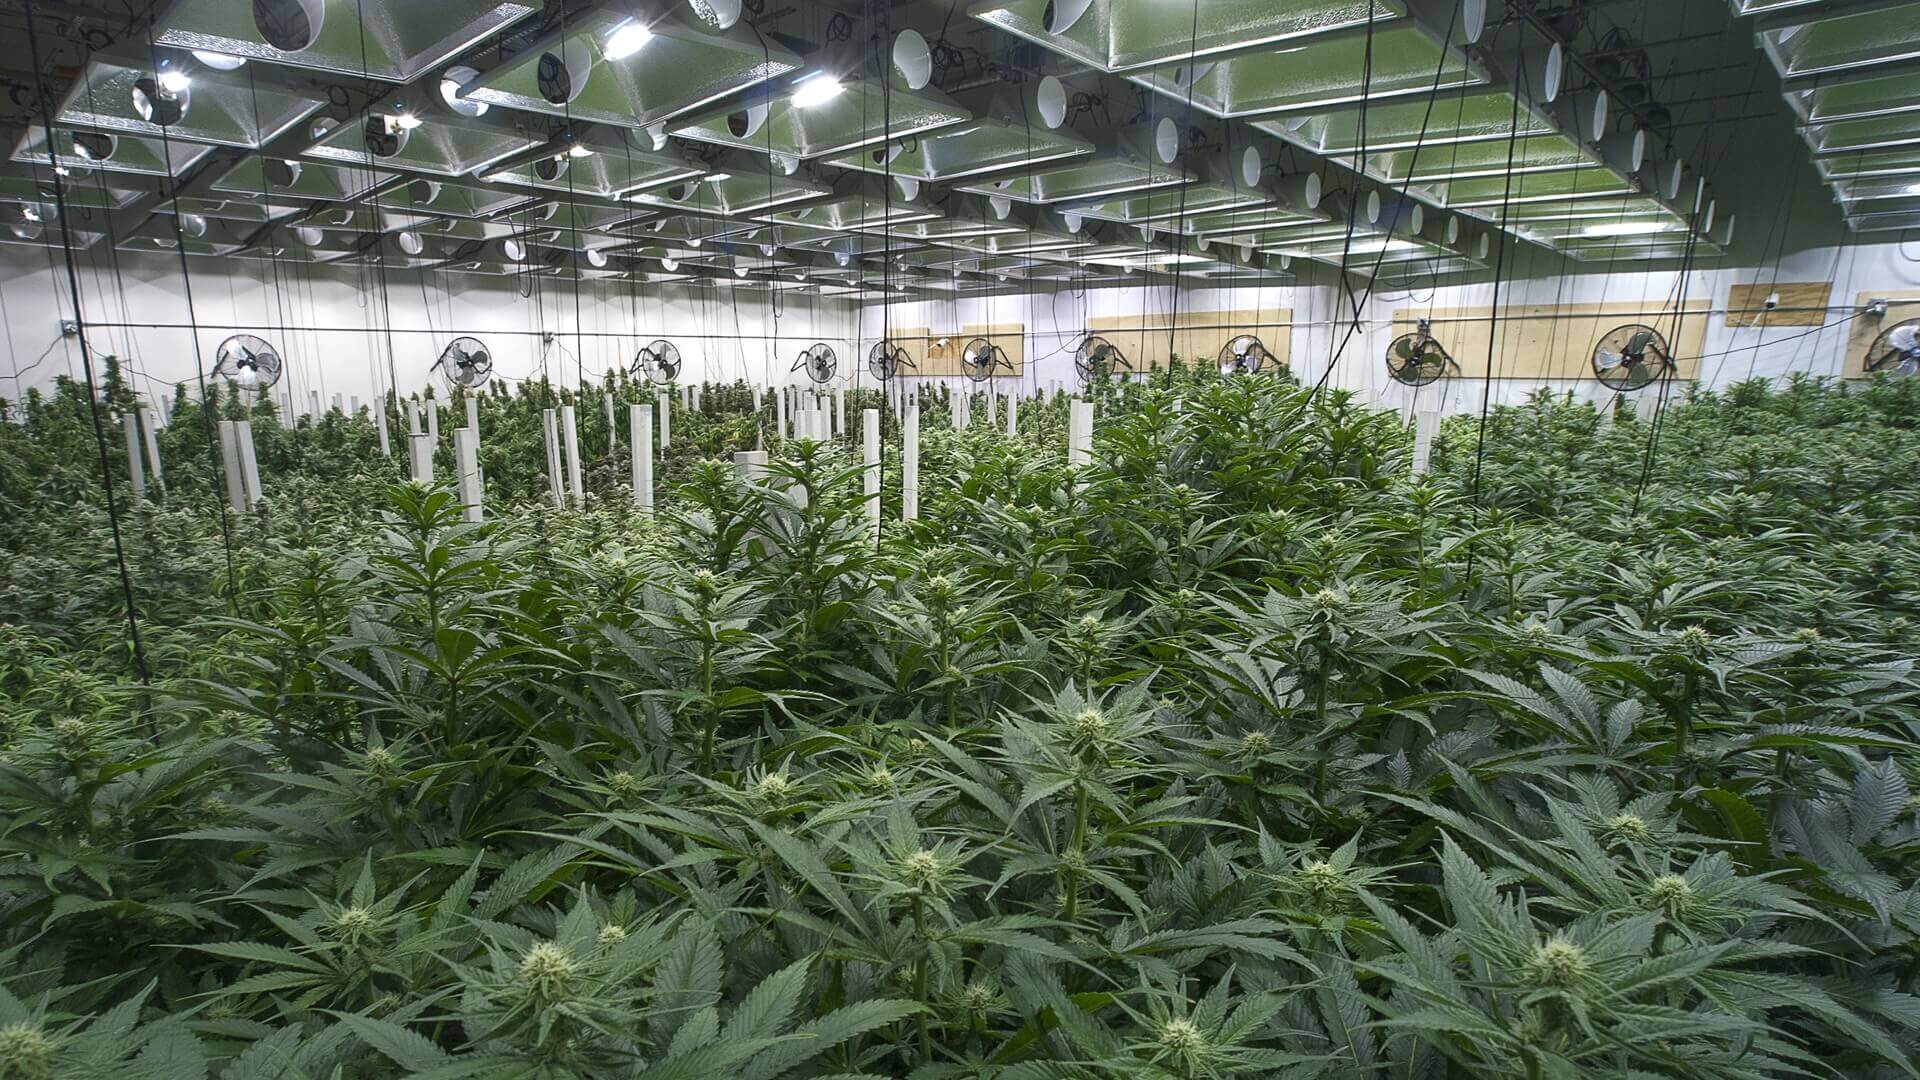 Rows of marijuana plants at a cannabis farm